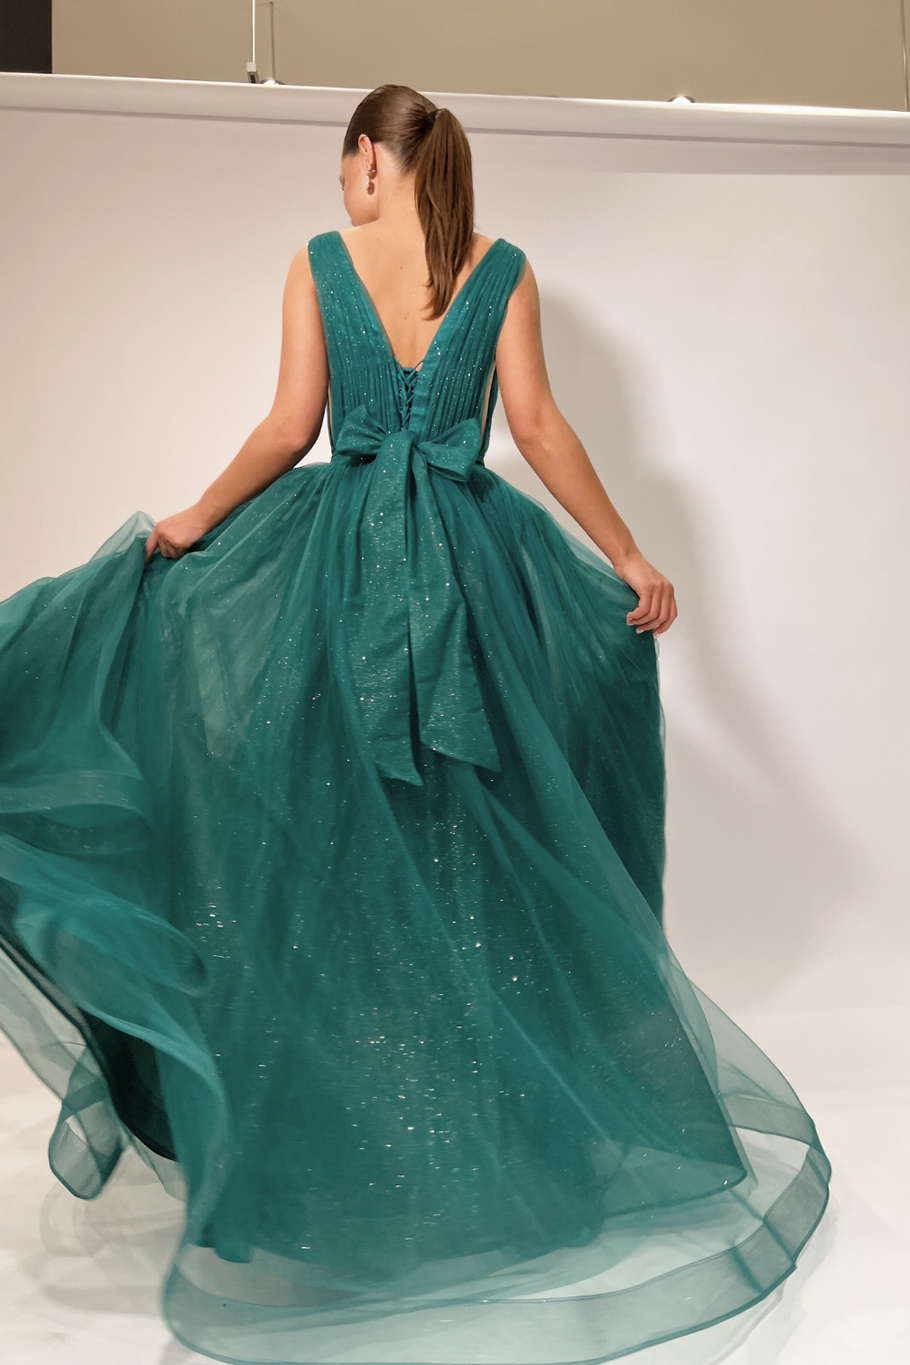 Купить вечернее платье Арт.13-23 из вечерней коллекции в салоне «Мэри Трюфель»